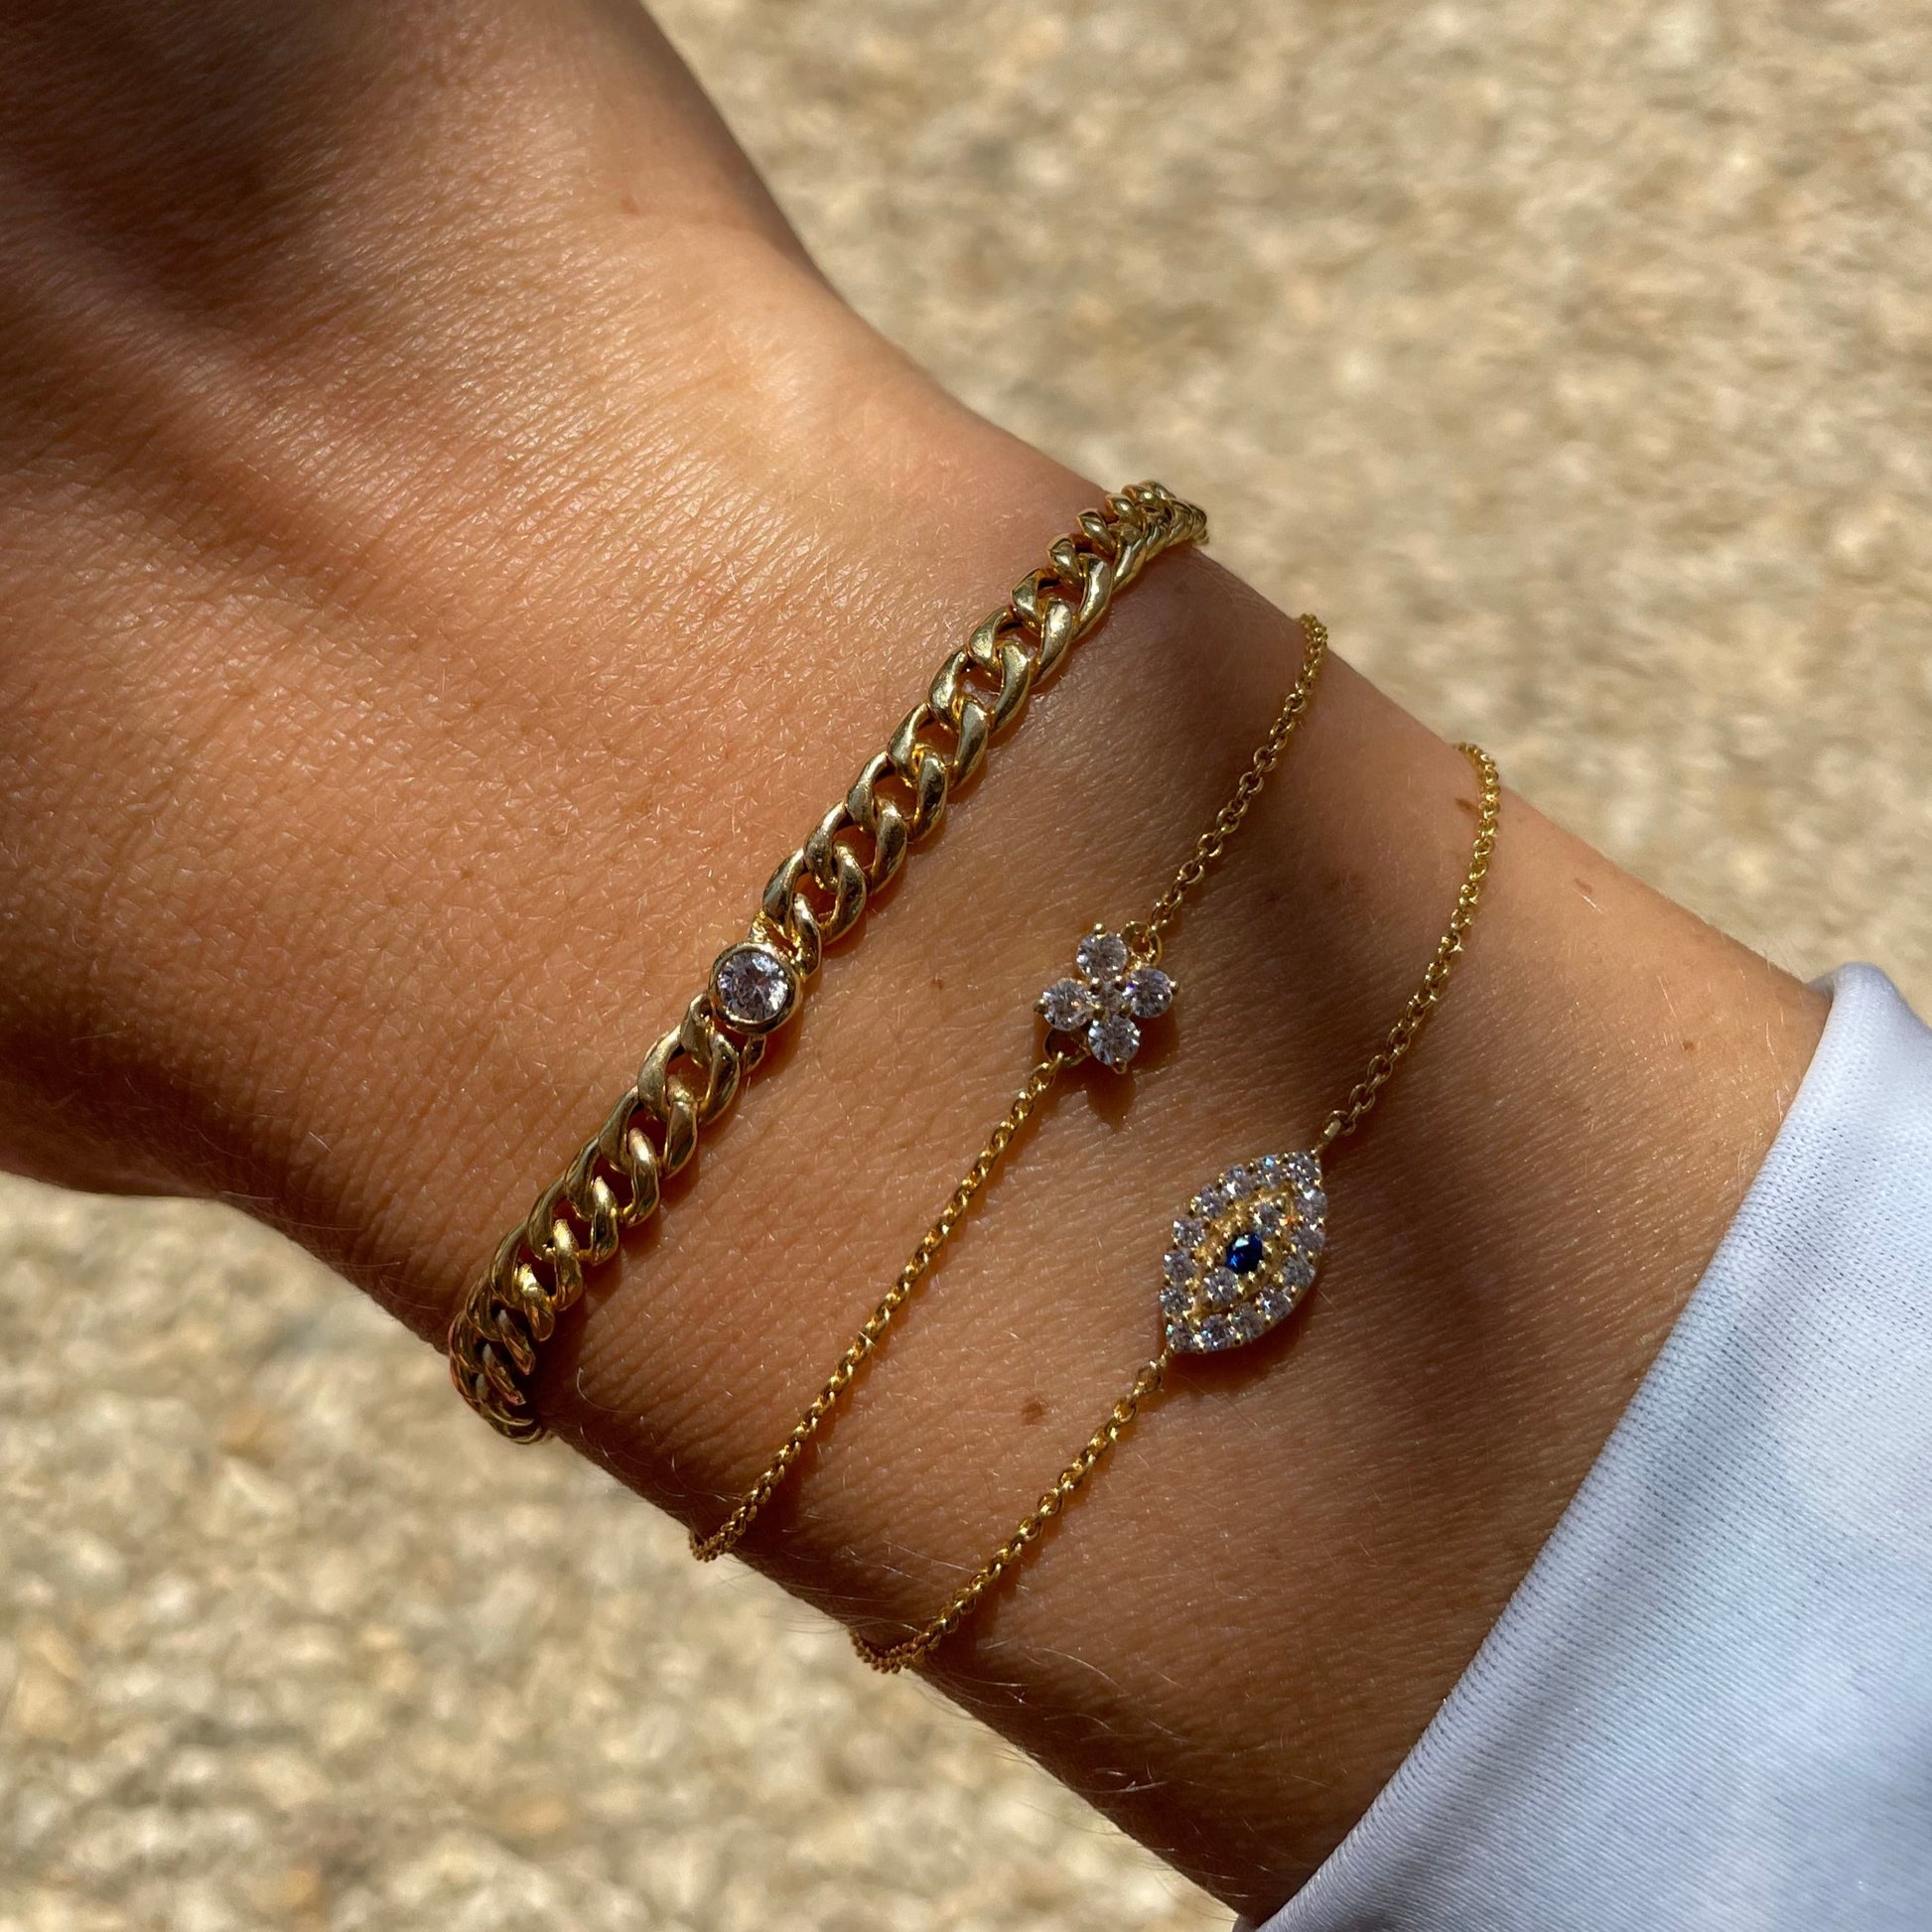 18-carat Curb Chain Single Diamond Bracelet - - Jewelry - Goldie Paris Jewelry - Bezel Bracelet